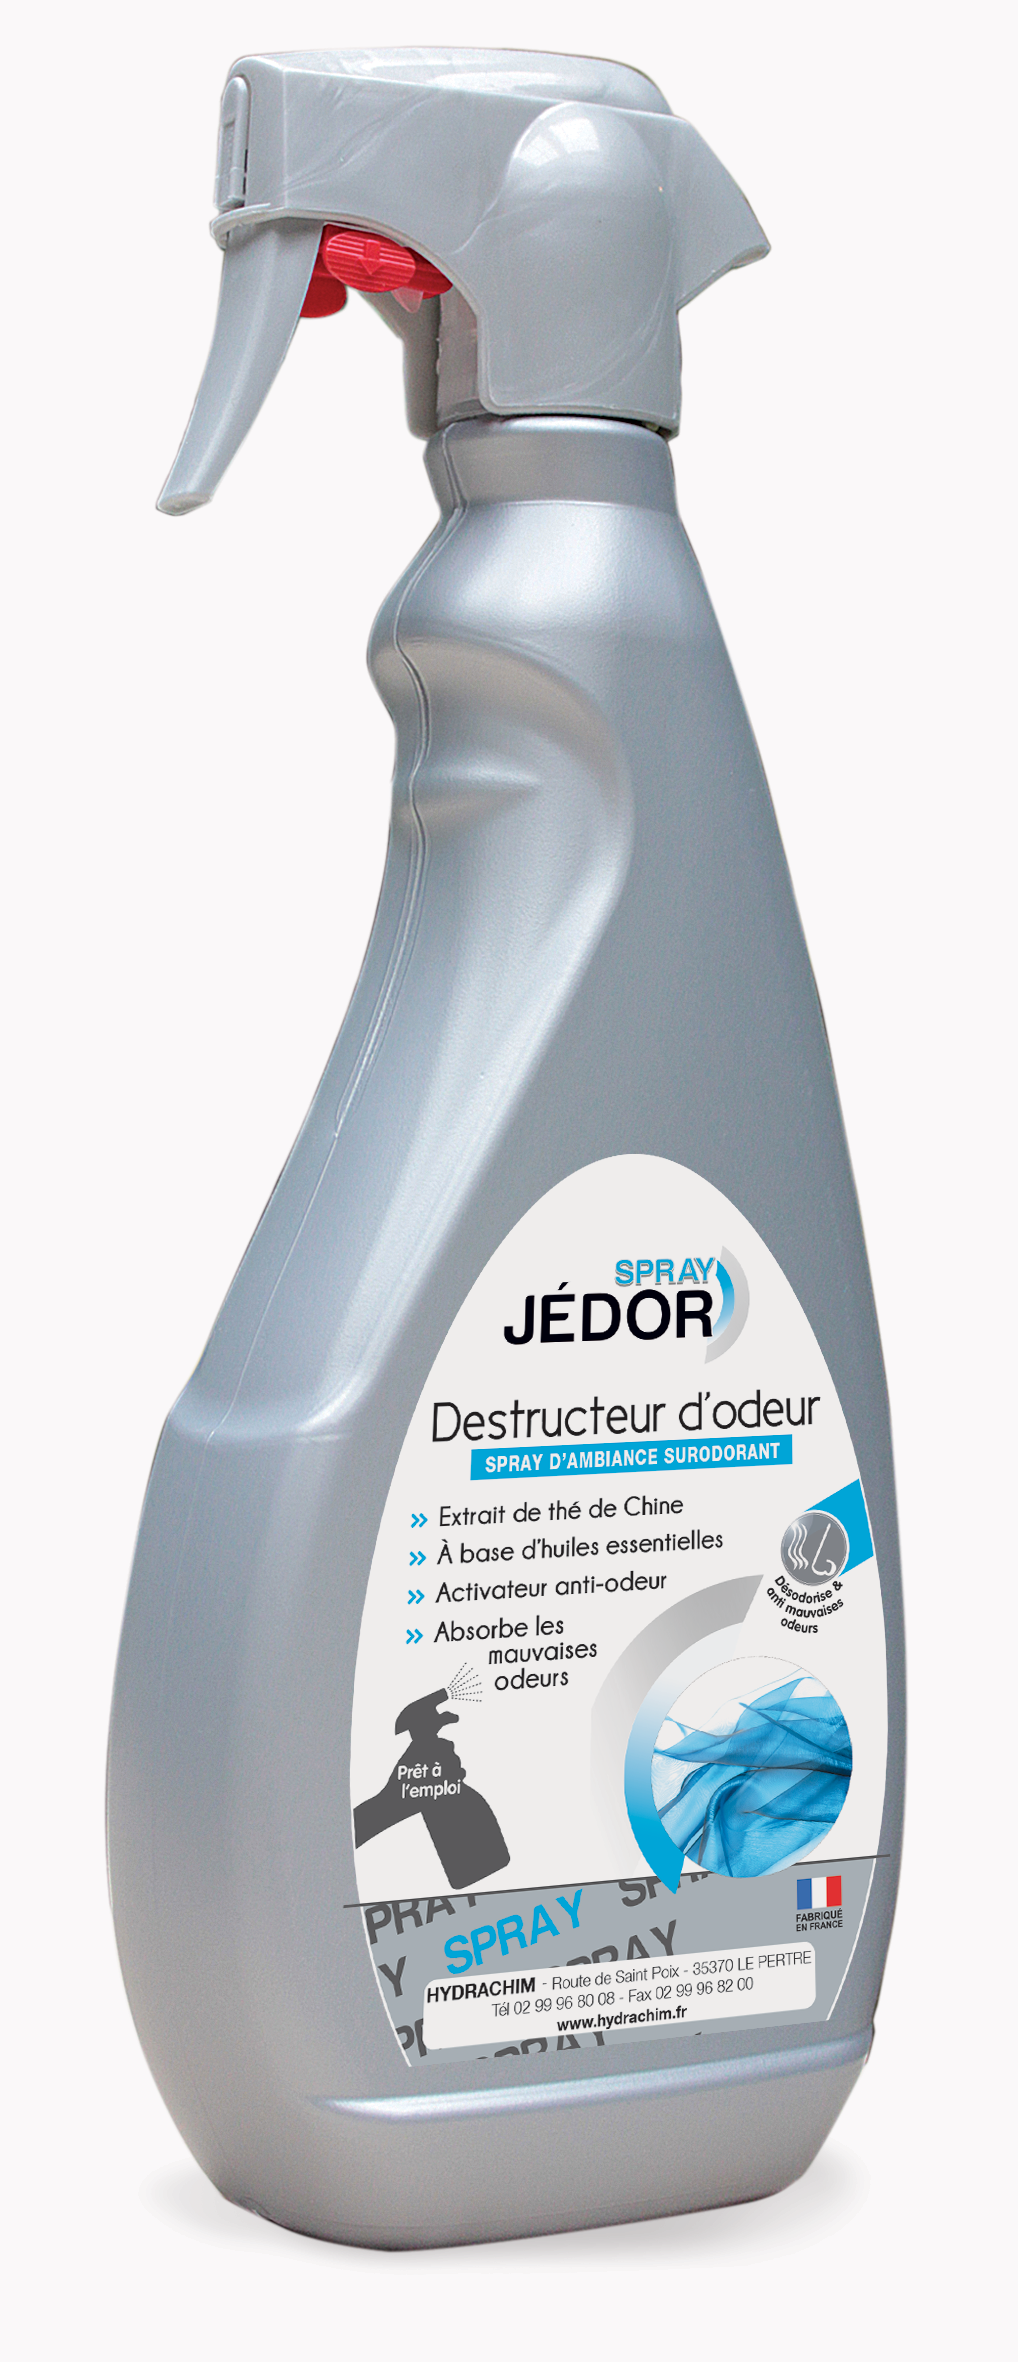 Spray destructeur d’odeurs - JEDOR -  500mL